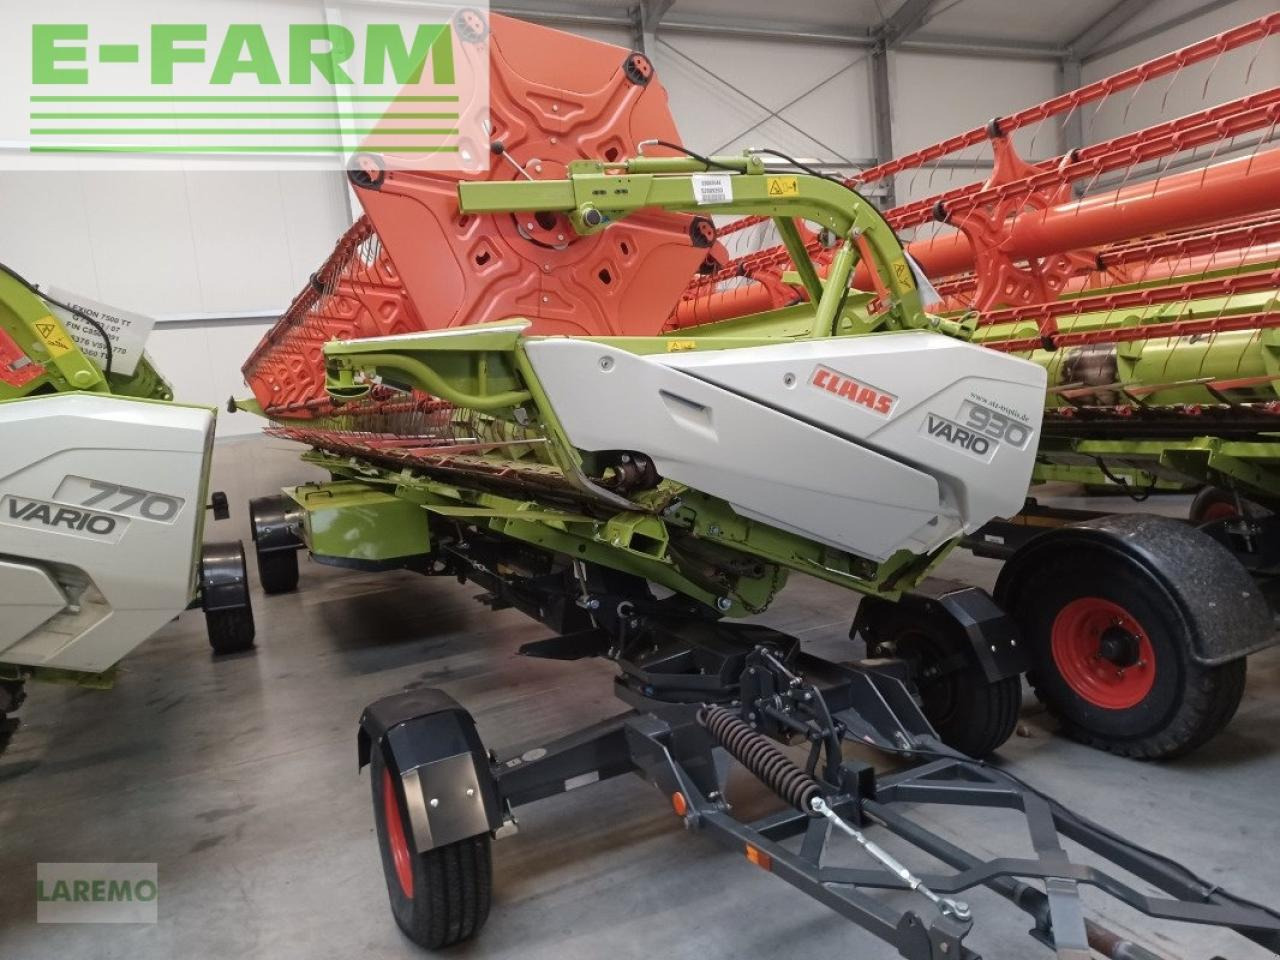 Farm tractor CLAAS lexion 770 tt + v 930